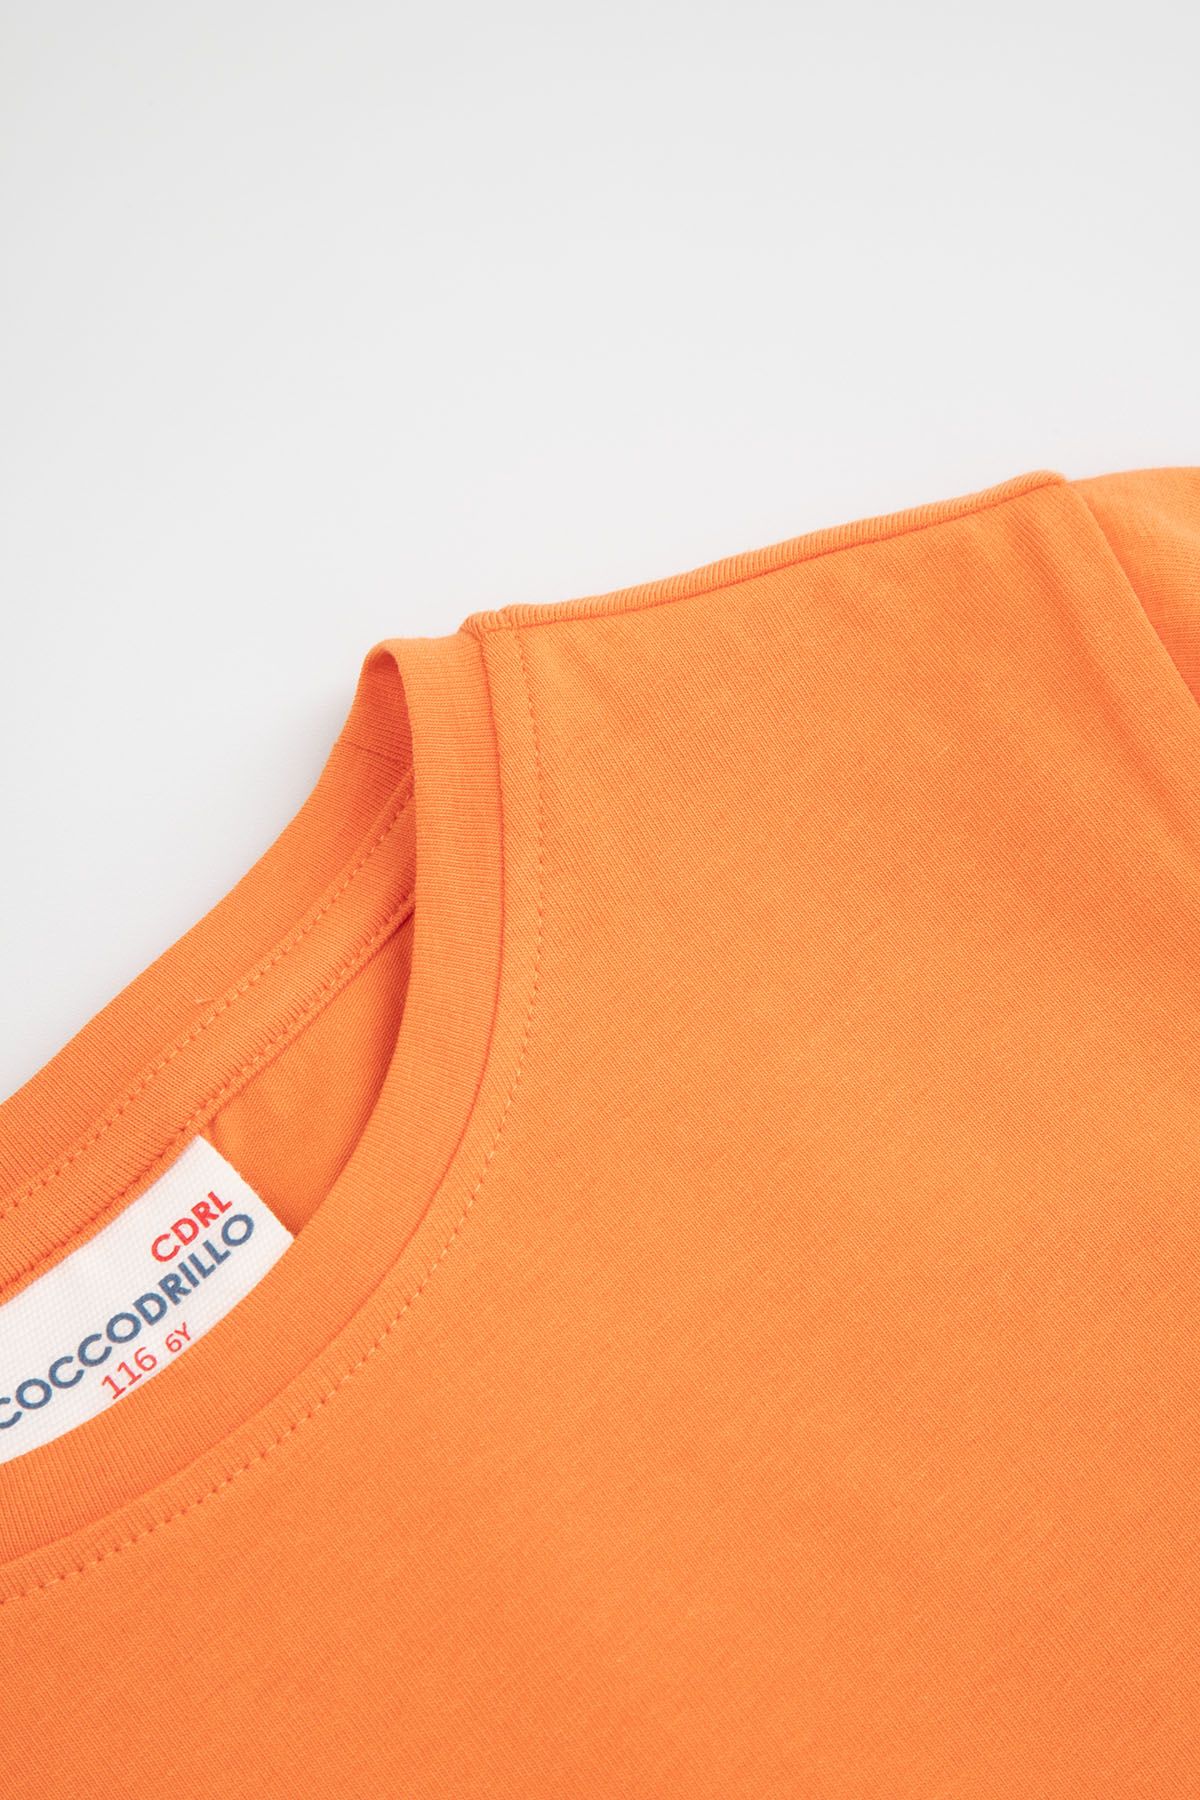 T-shirt z krótkim rękawem pomarańczowy gładki 2219387